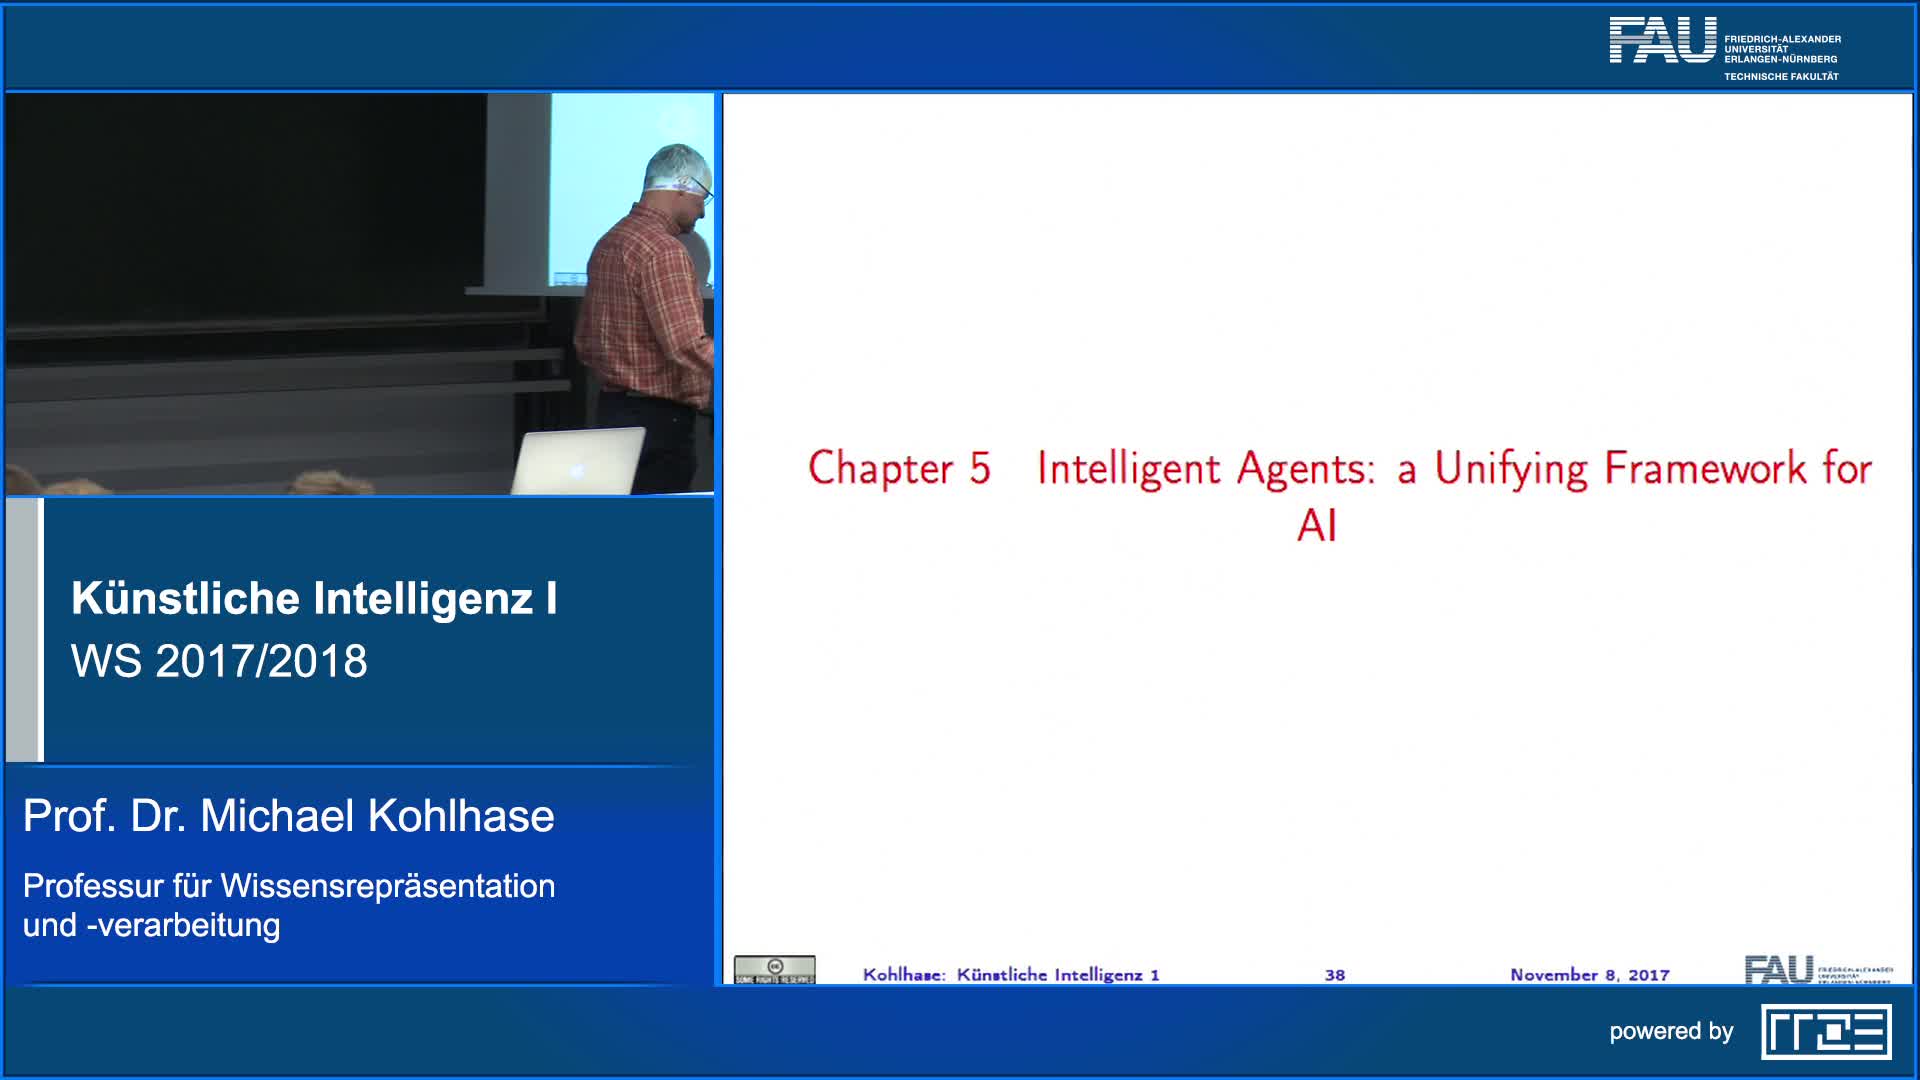 Künstliche Intelligenz I preview image